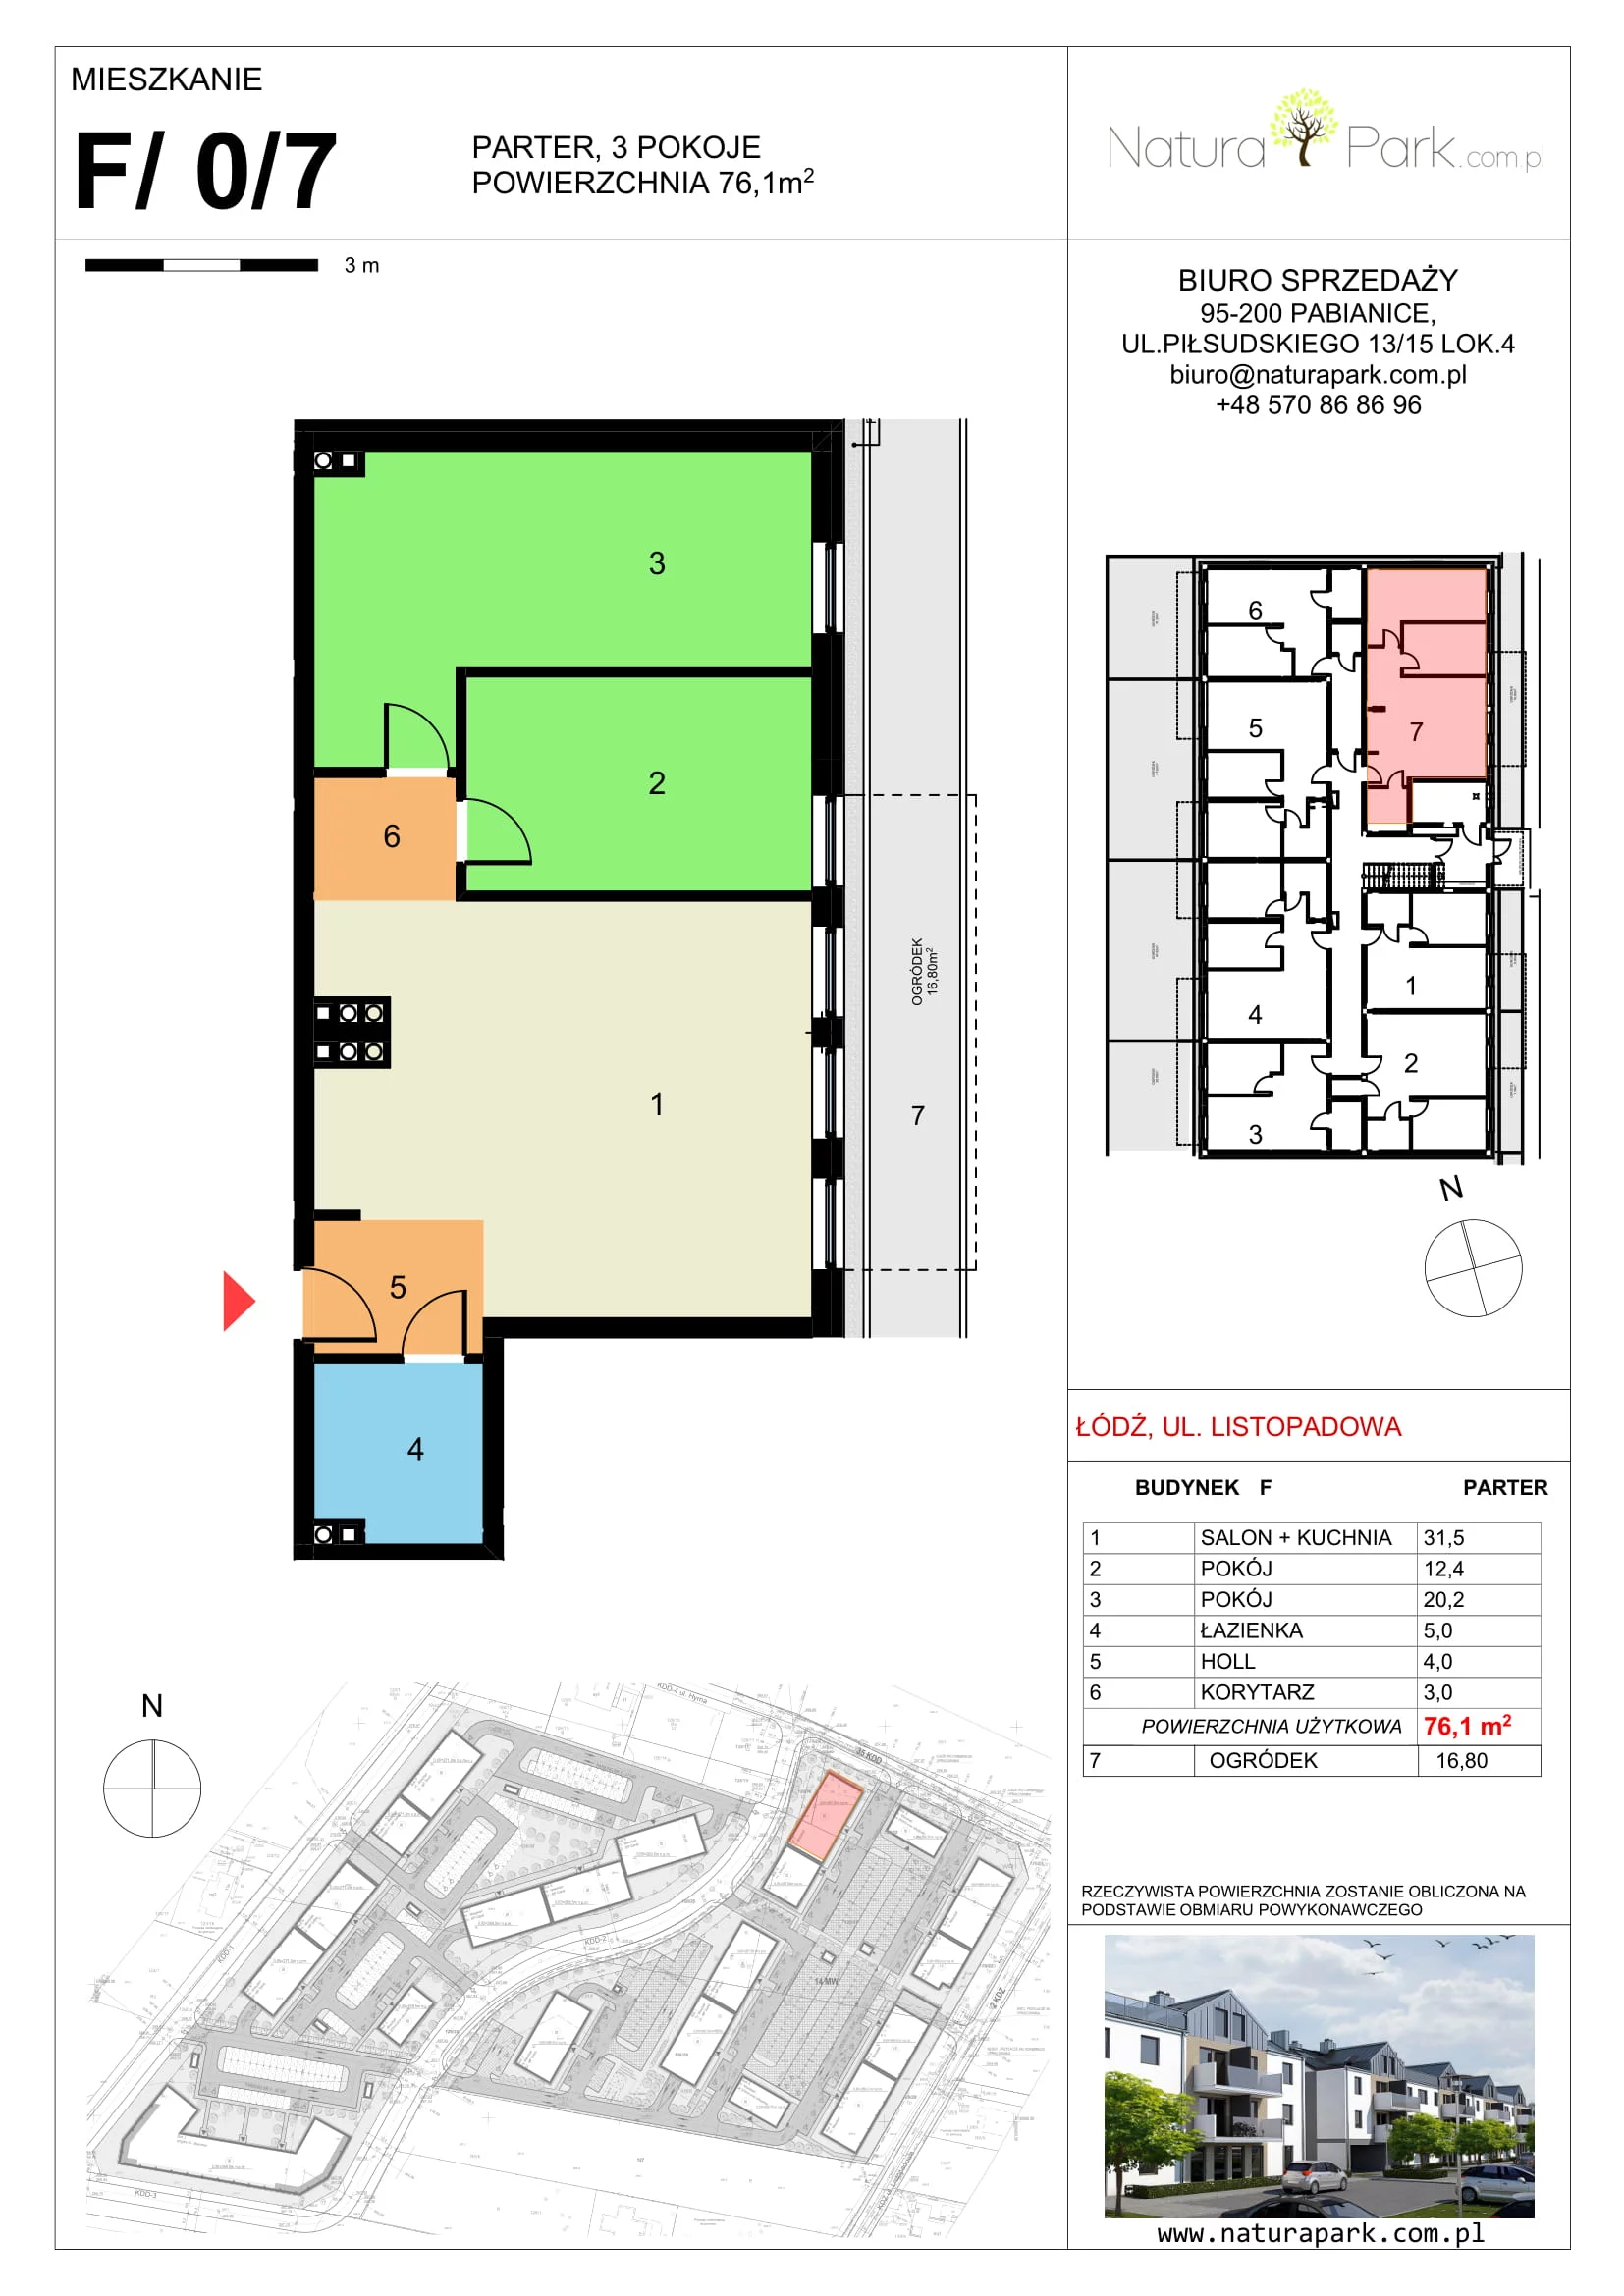 Mieszkanie 76,10 m², parter, oferta nr F/0/7, Natura Park, Łódź, Widzew, Dolina Łódki, ul. Listopadowa